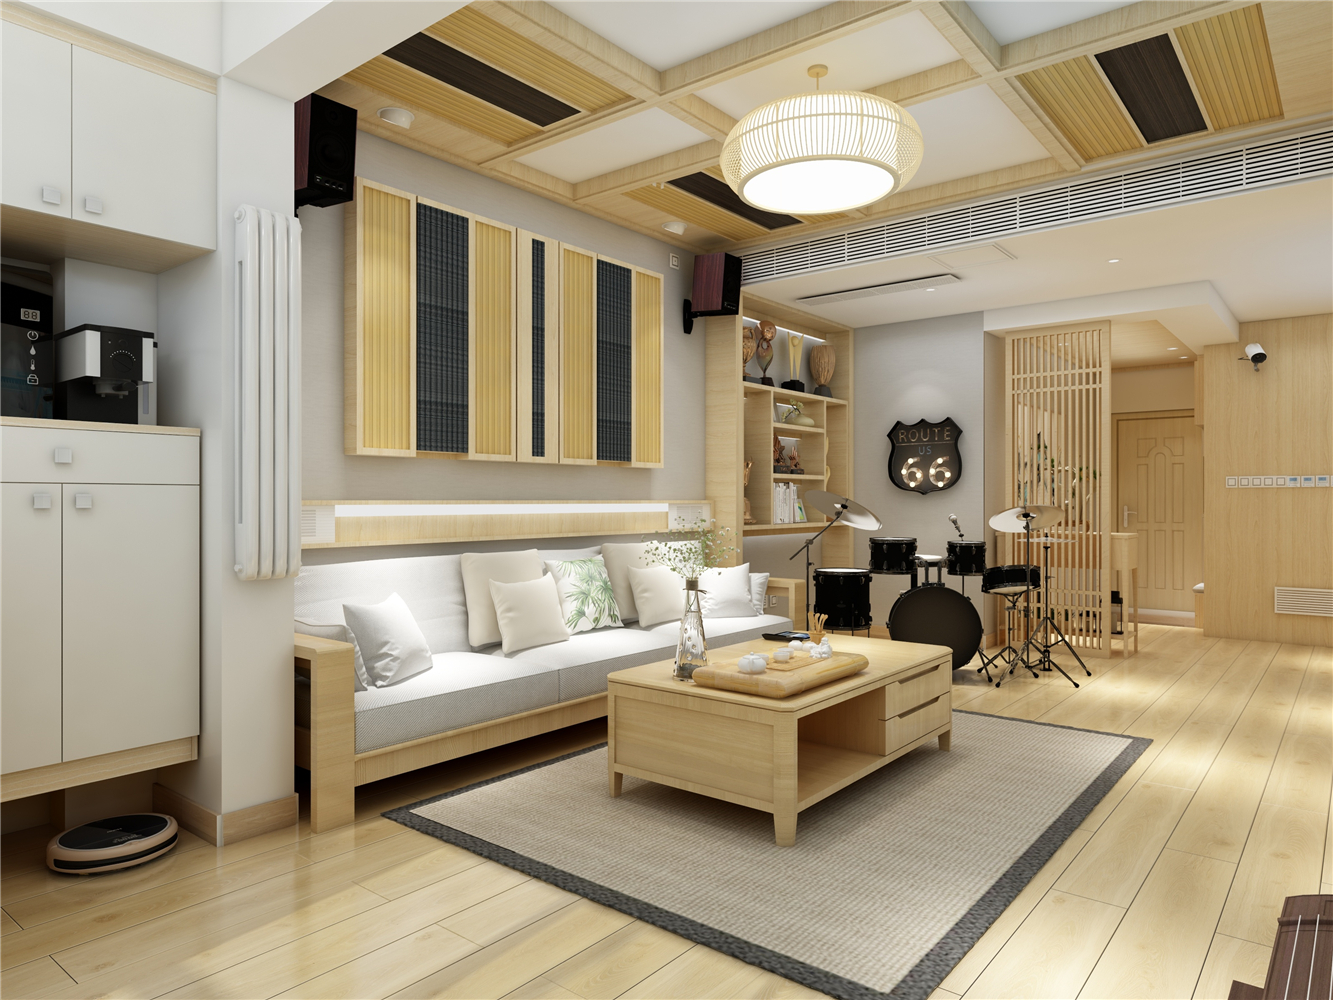 装修沙发背景墙效果图复古日式公寓客厅沙发效果图日式宜家小沙发效果